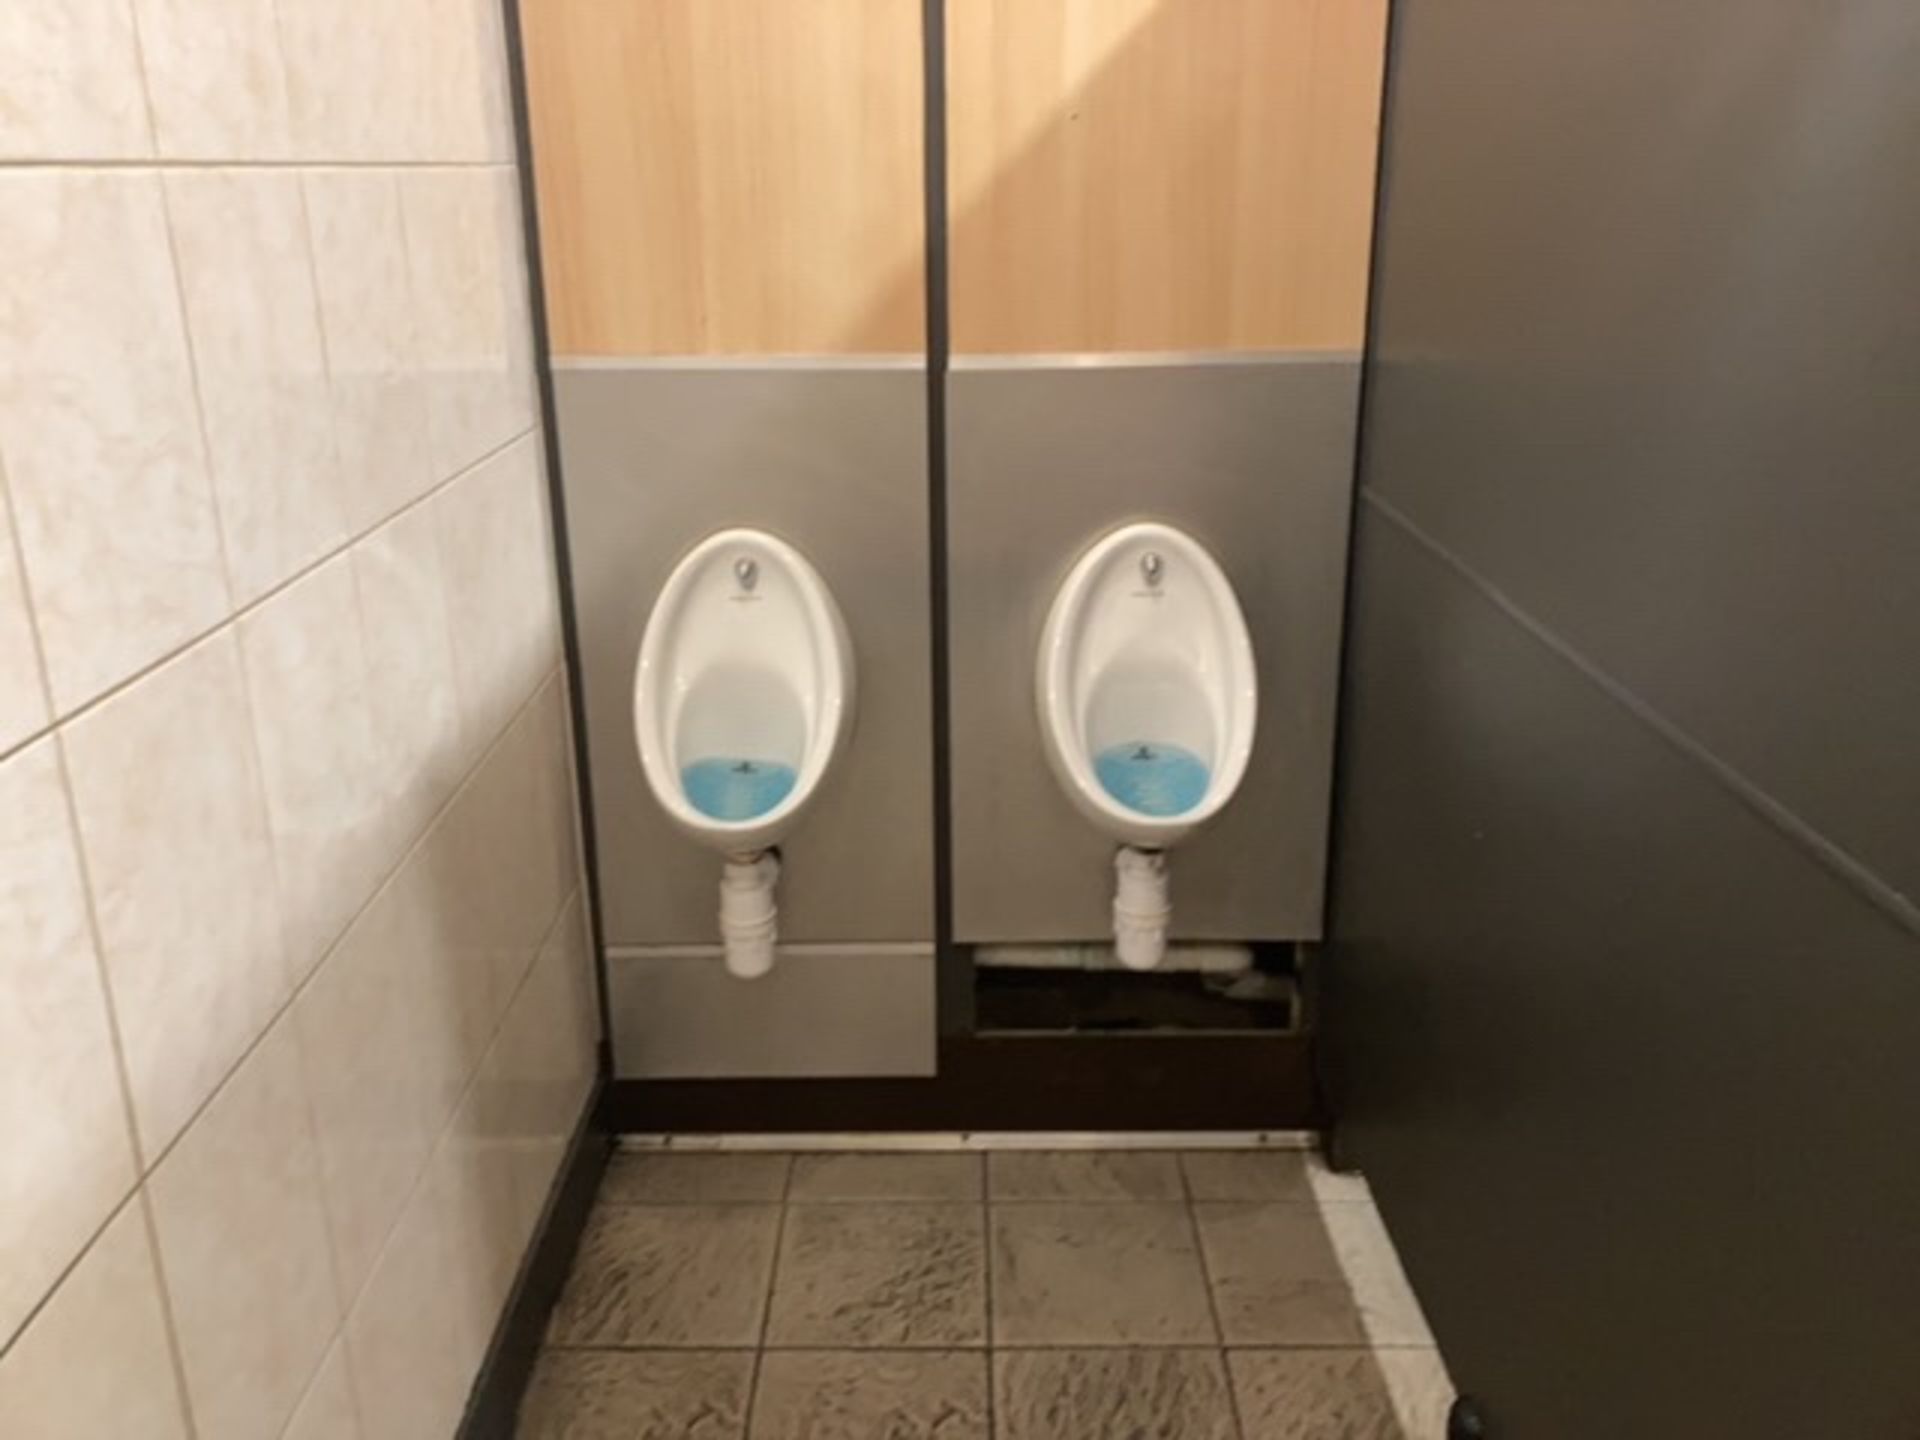 Gents toilet